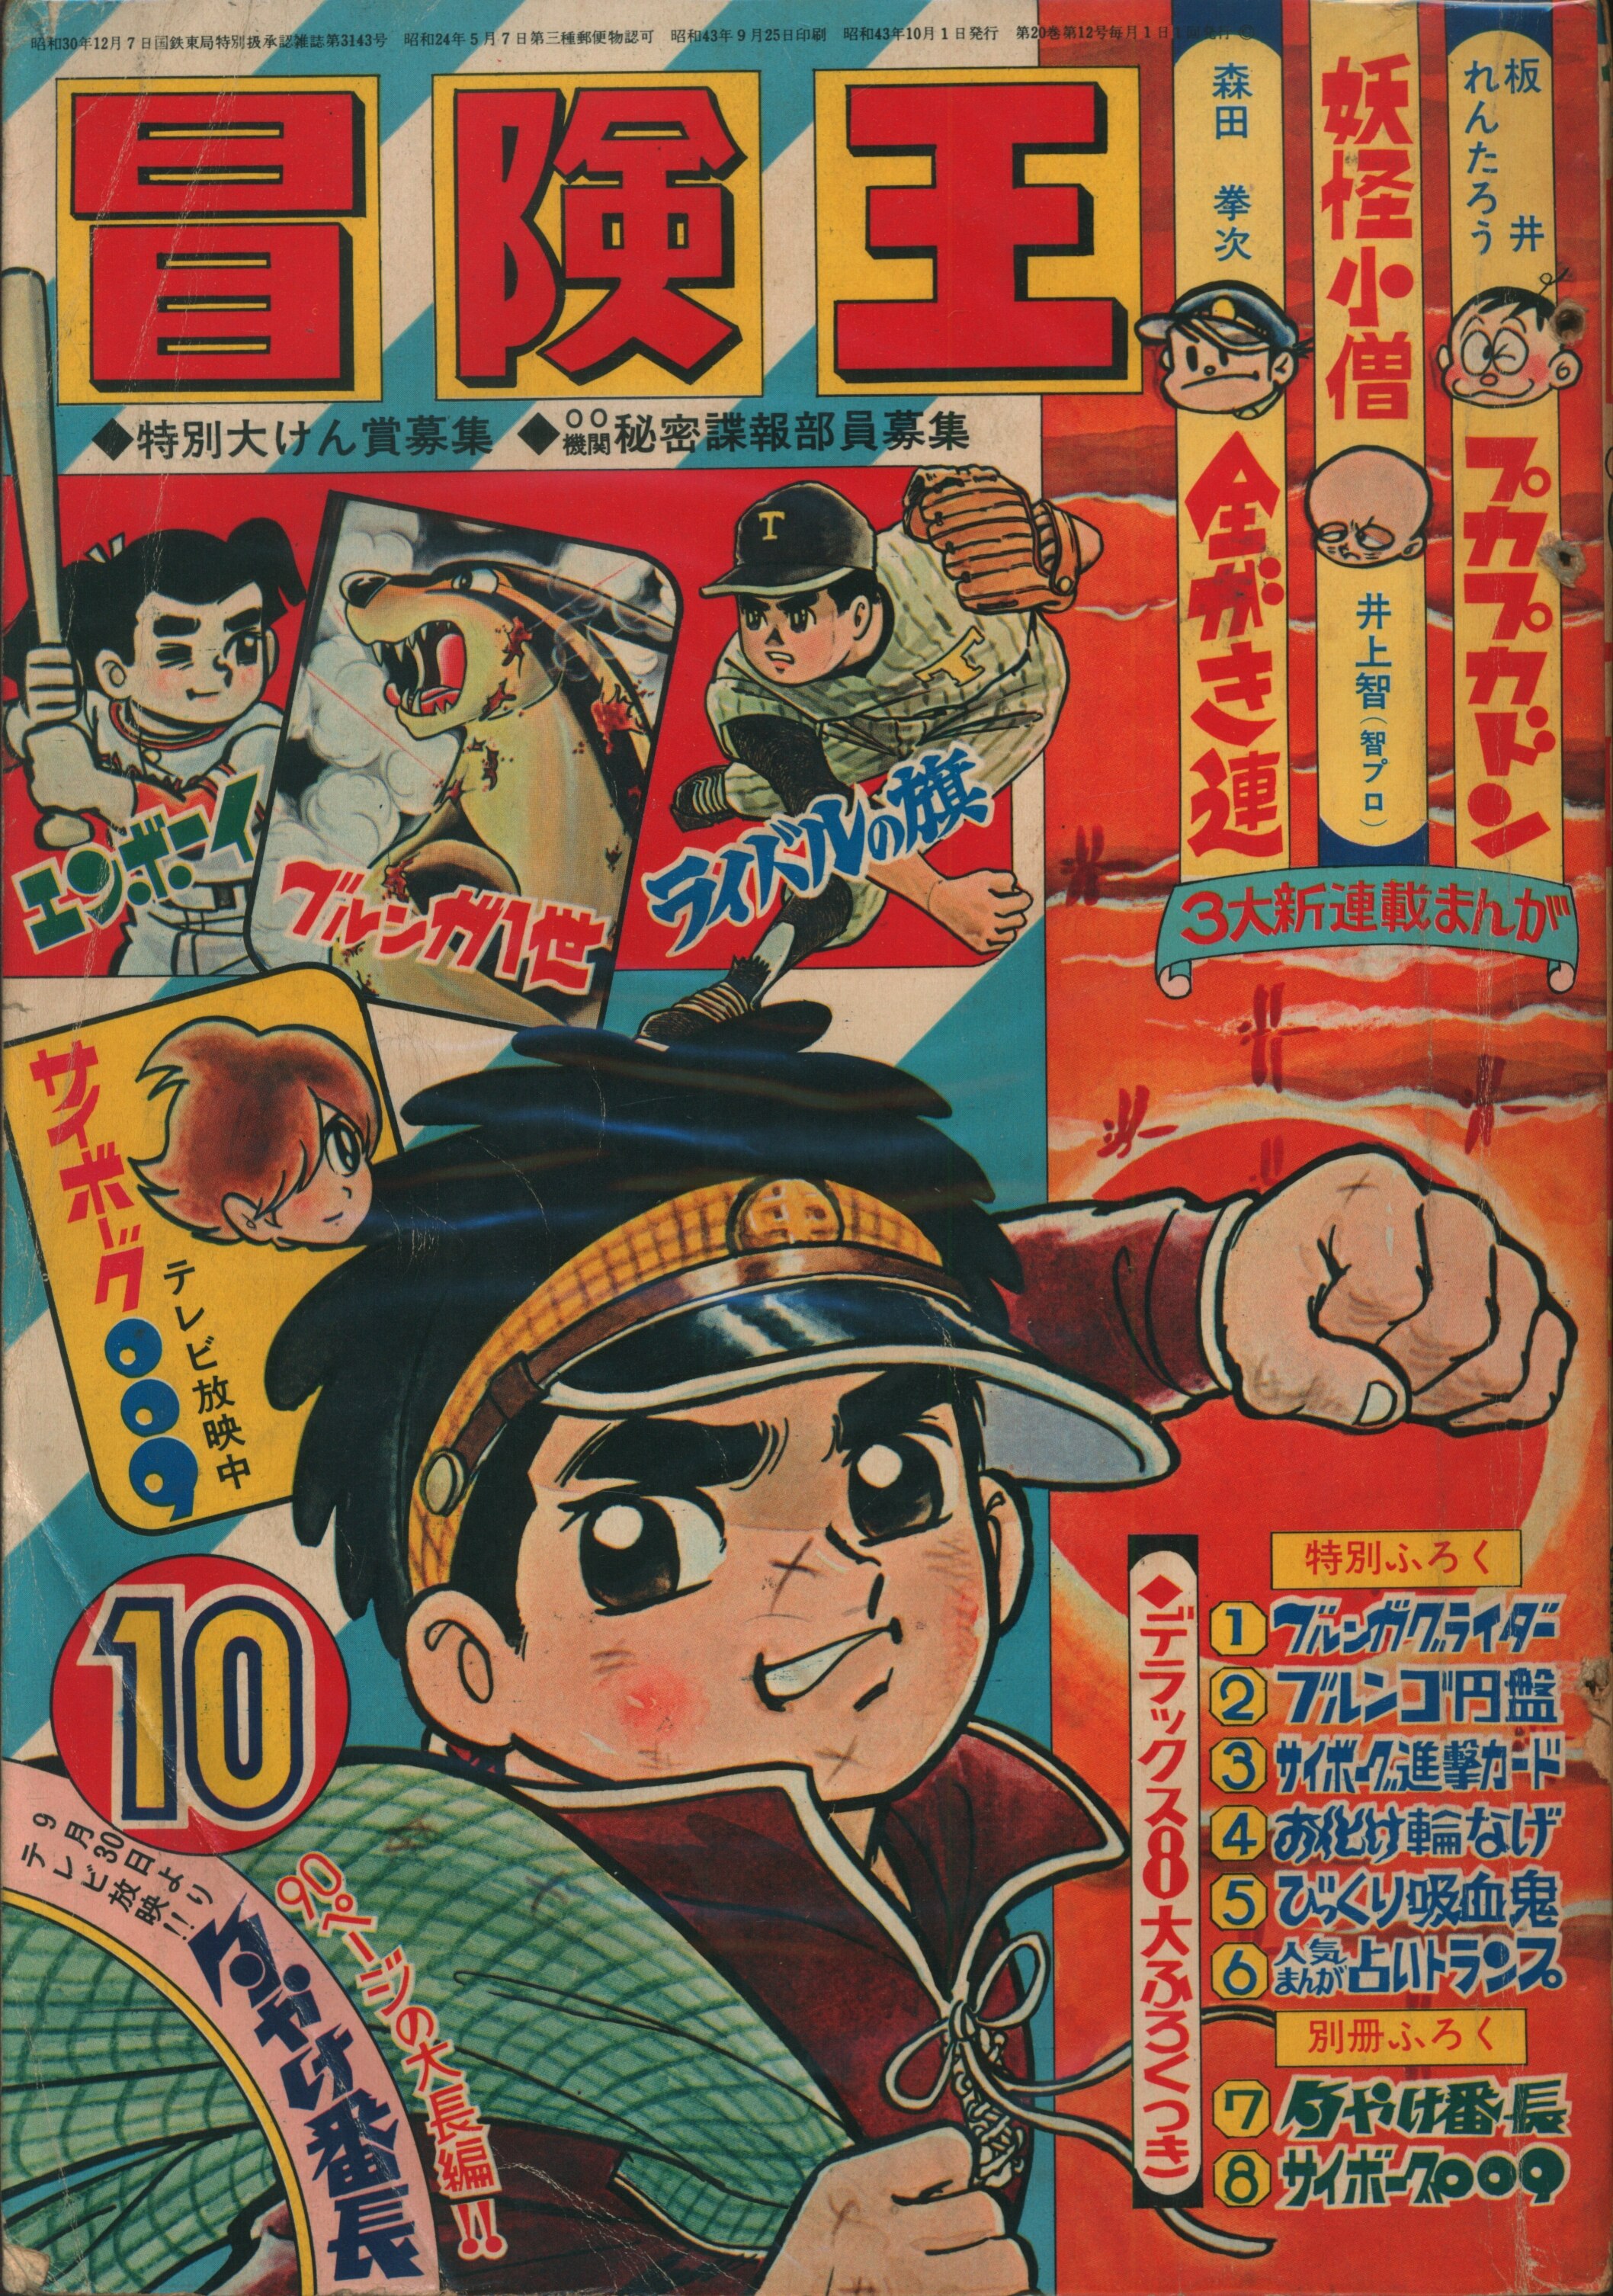 秋田書店 1968年(昭和43年)の漫画雑誌 冒険王 1968年(昭和43年)10月号